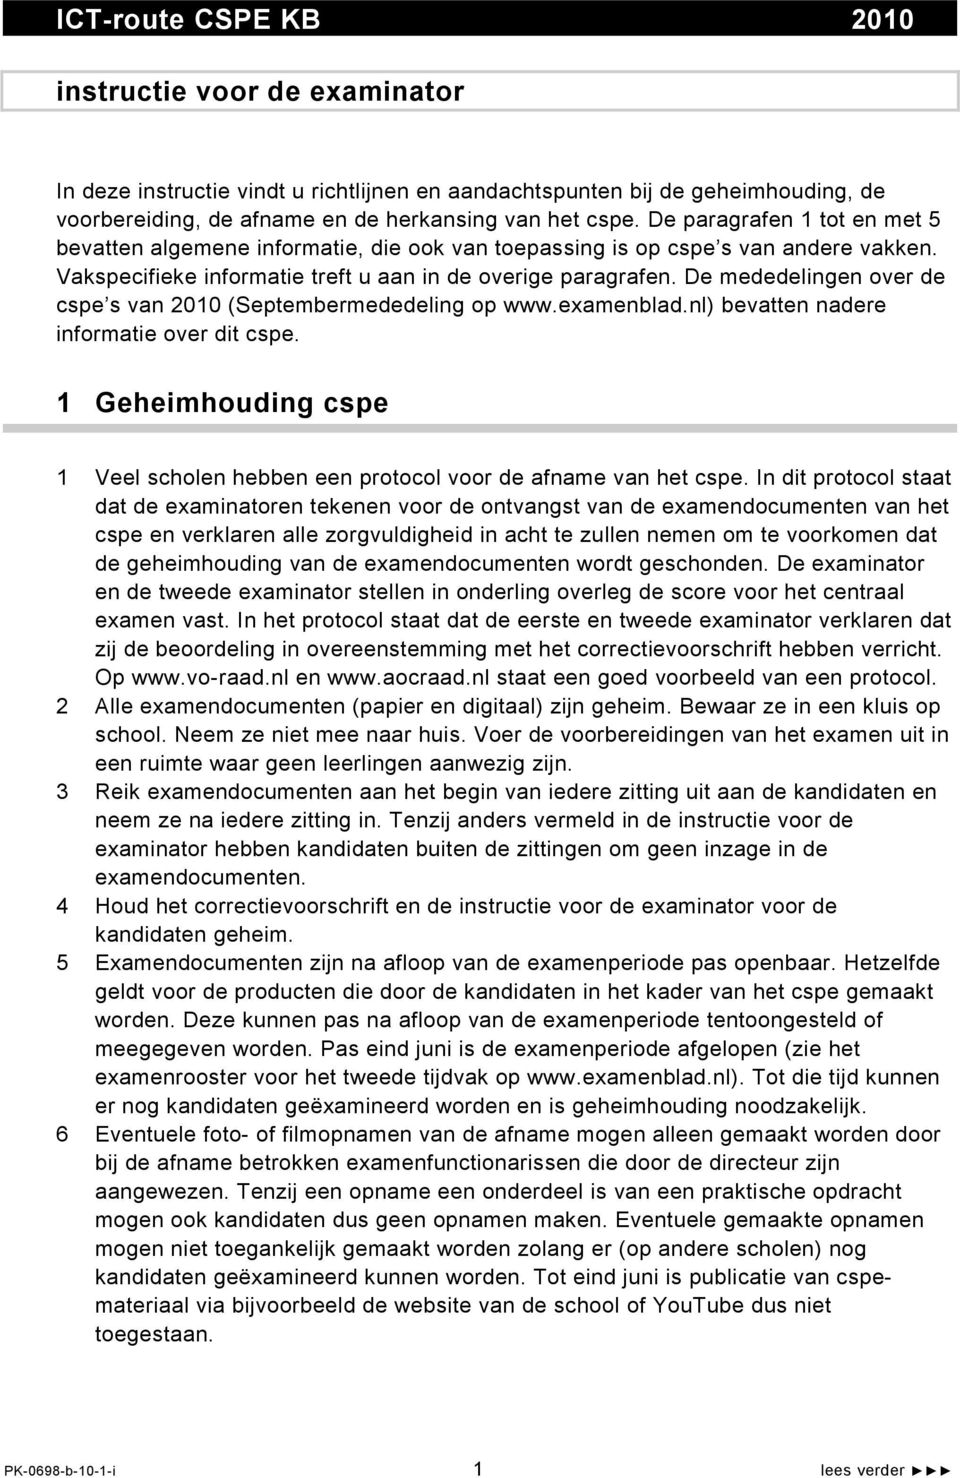 De mededelingen over de cspe s van 10 (Septembermededeling op www.examenblad.nl) bevatten nadere informatie over dit cspe.